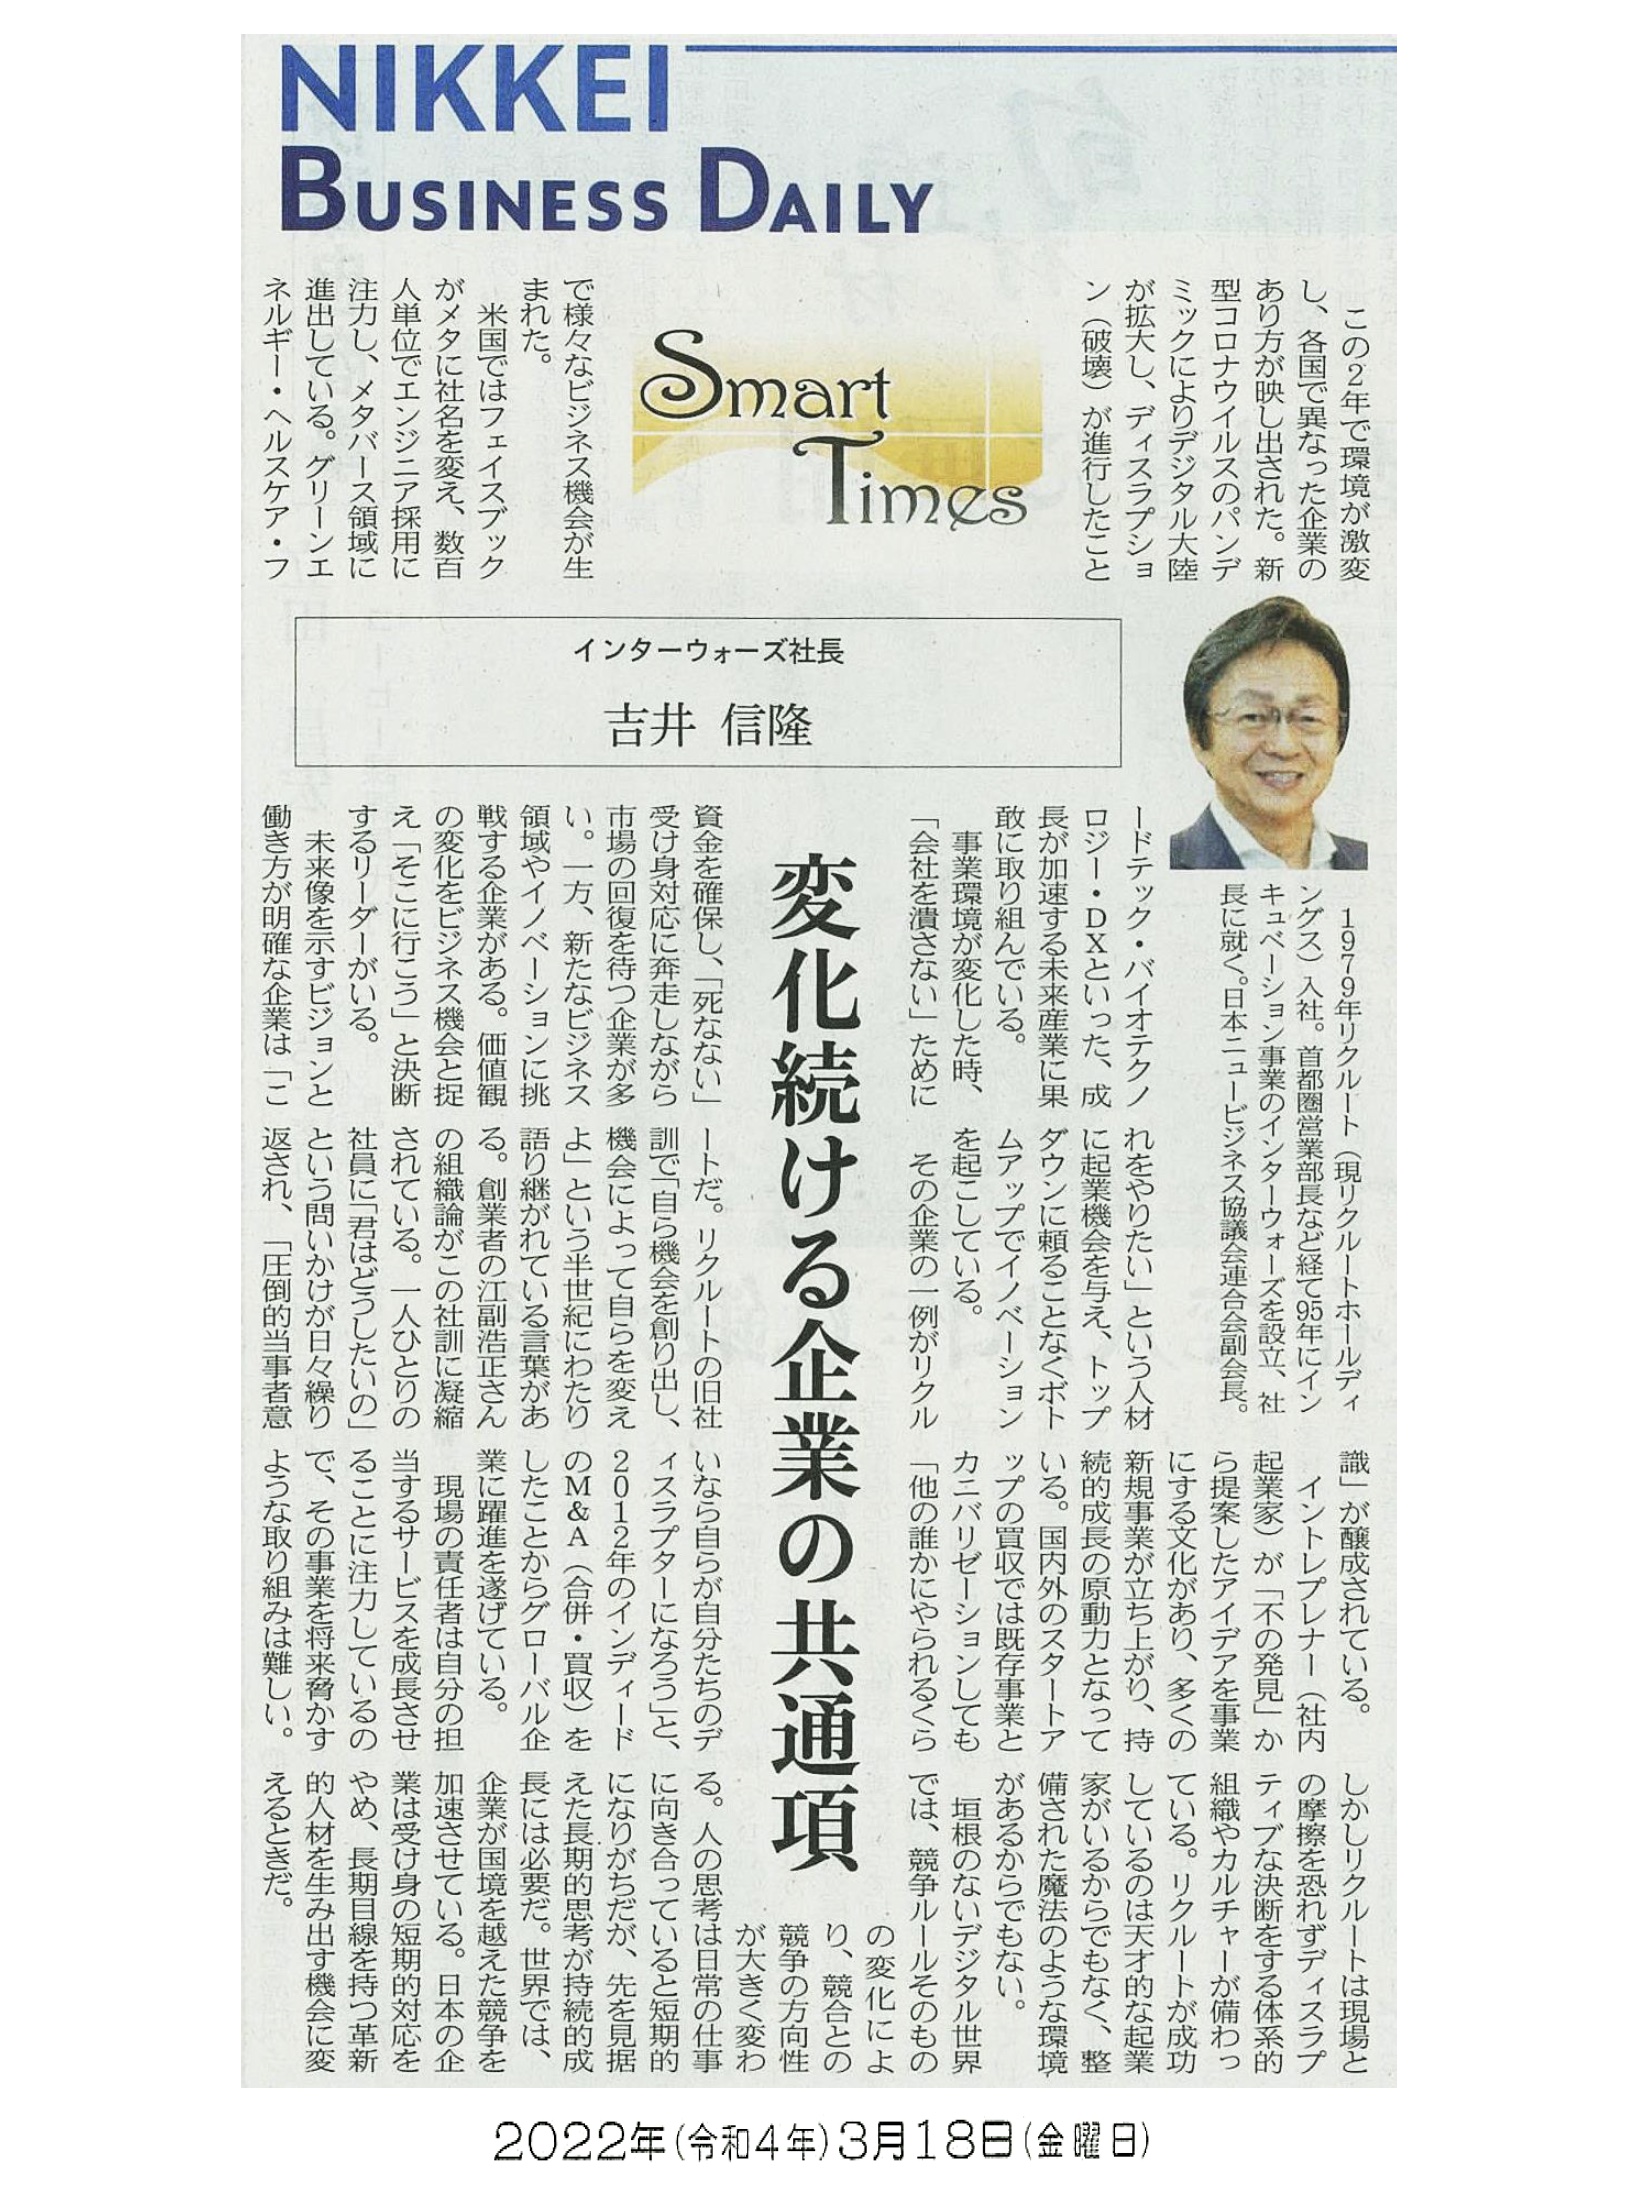 日経産業新聞 Smart Times「変化続ける企業の共通項」